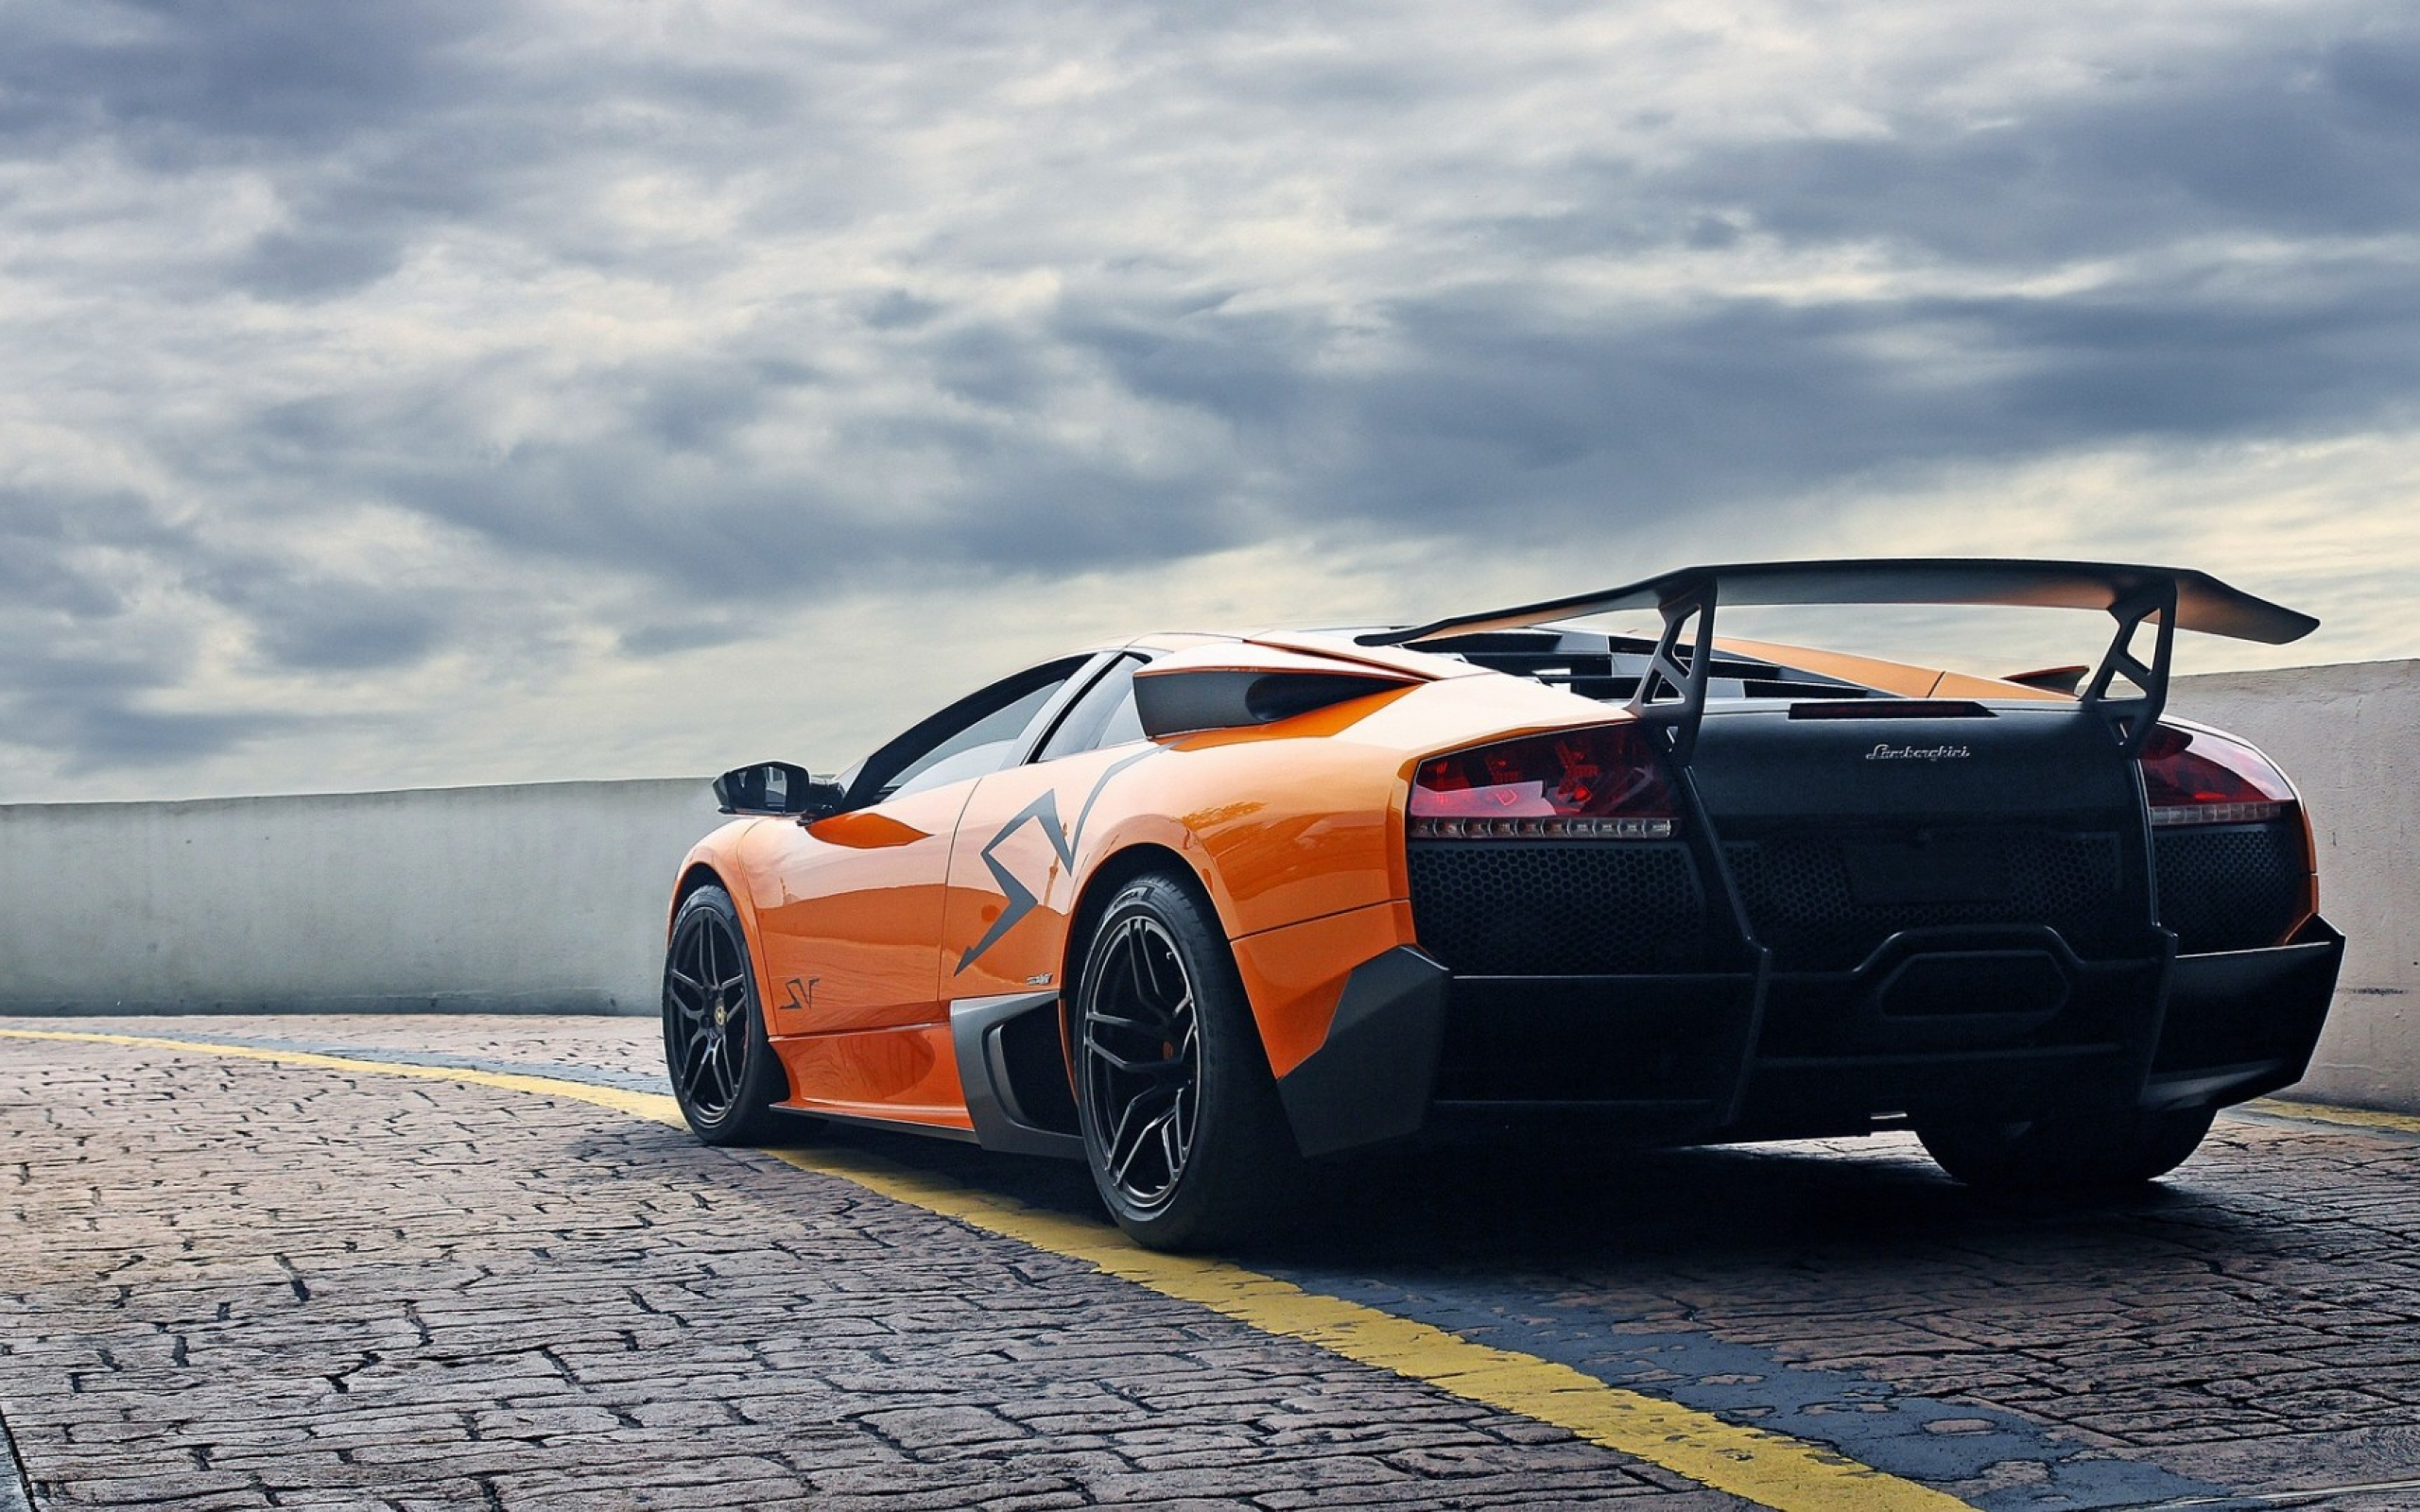 Lamborghini Murcielago Wallpapers Images Photos Pictures ...